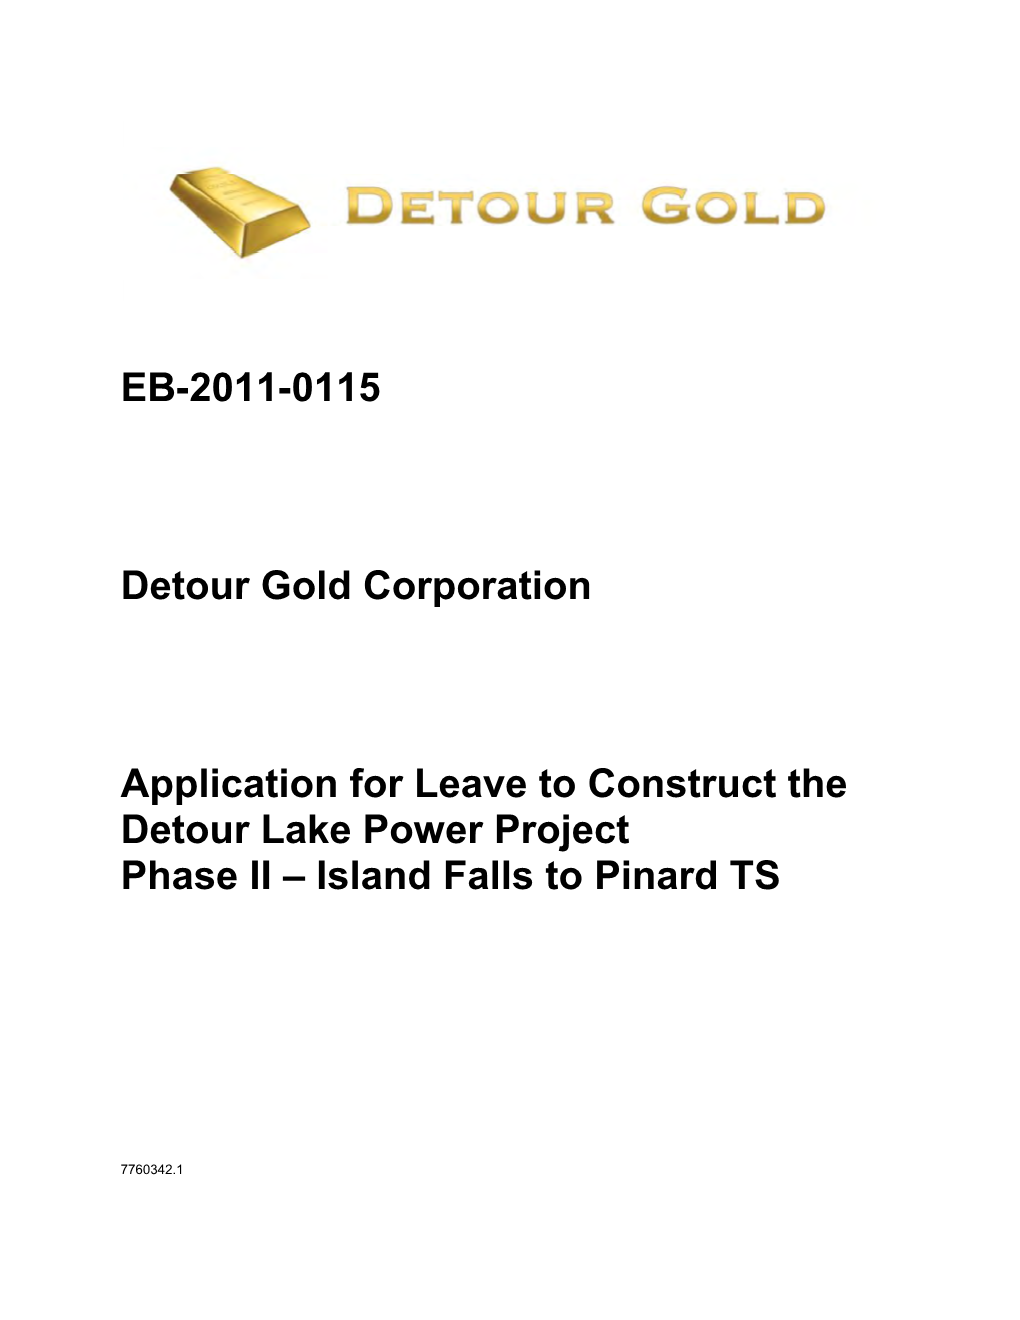 Detour Gold Corporation